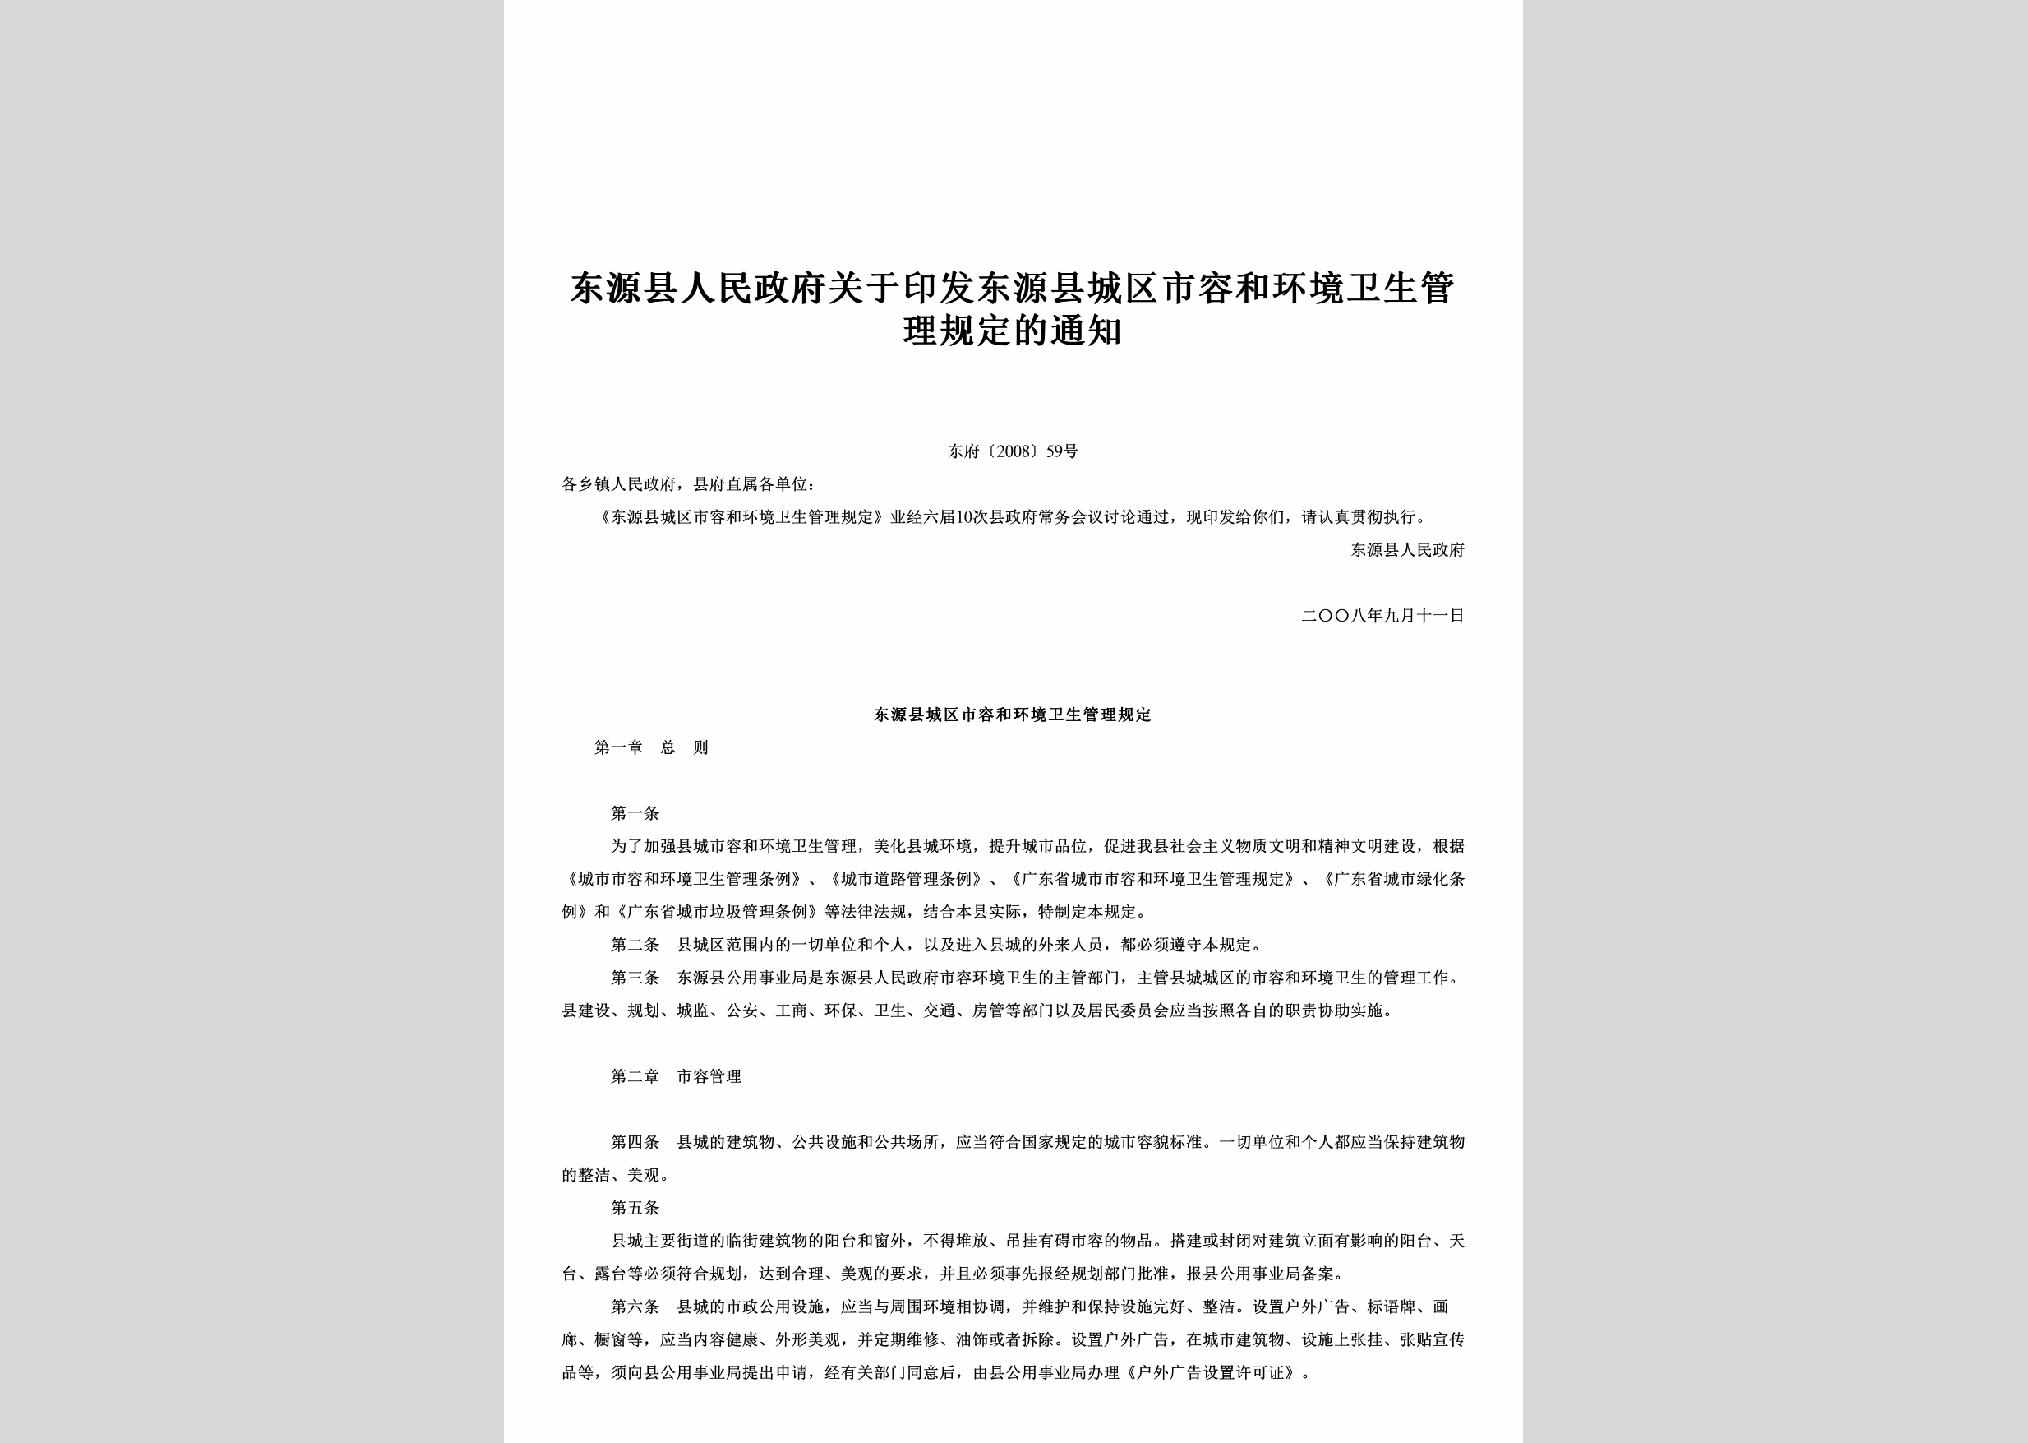 东府[2008]59号：关于印发东源县城区市容和环境卫生管理规定的通知